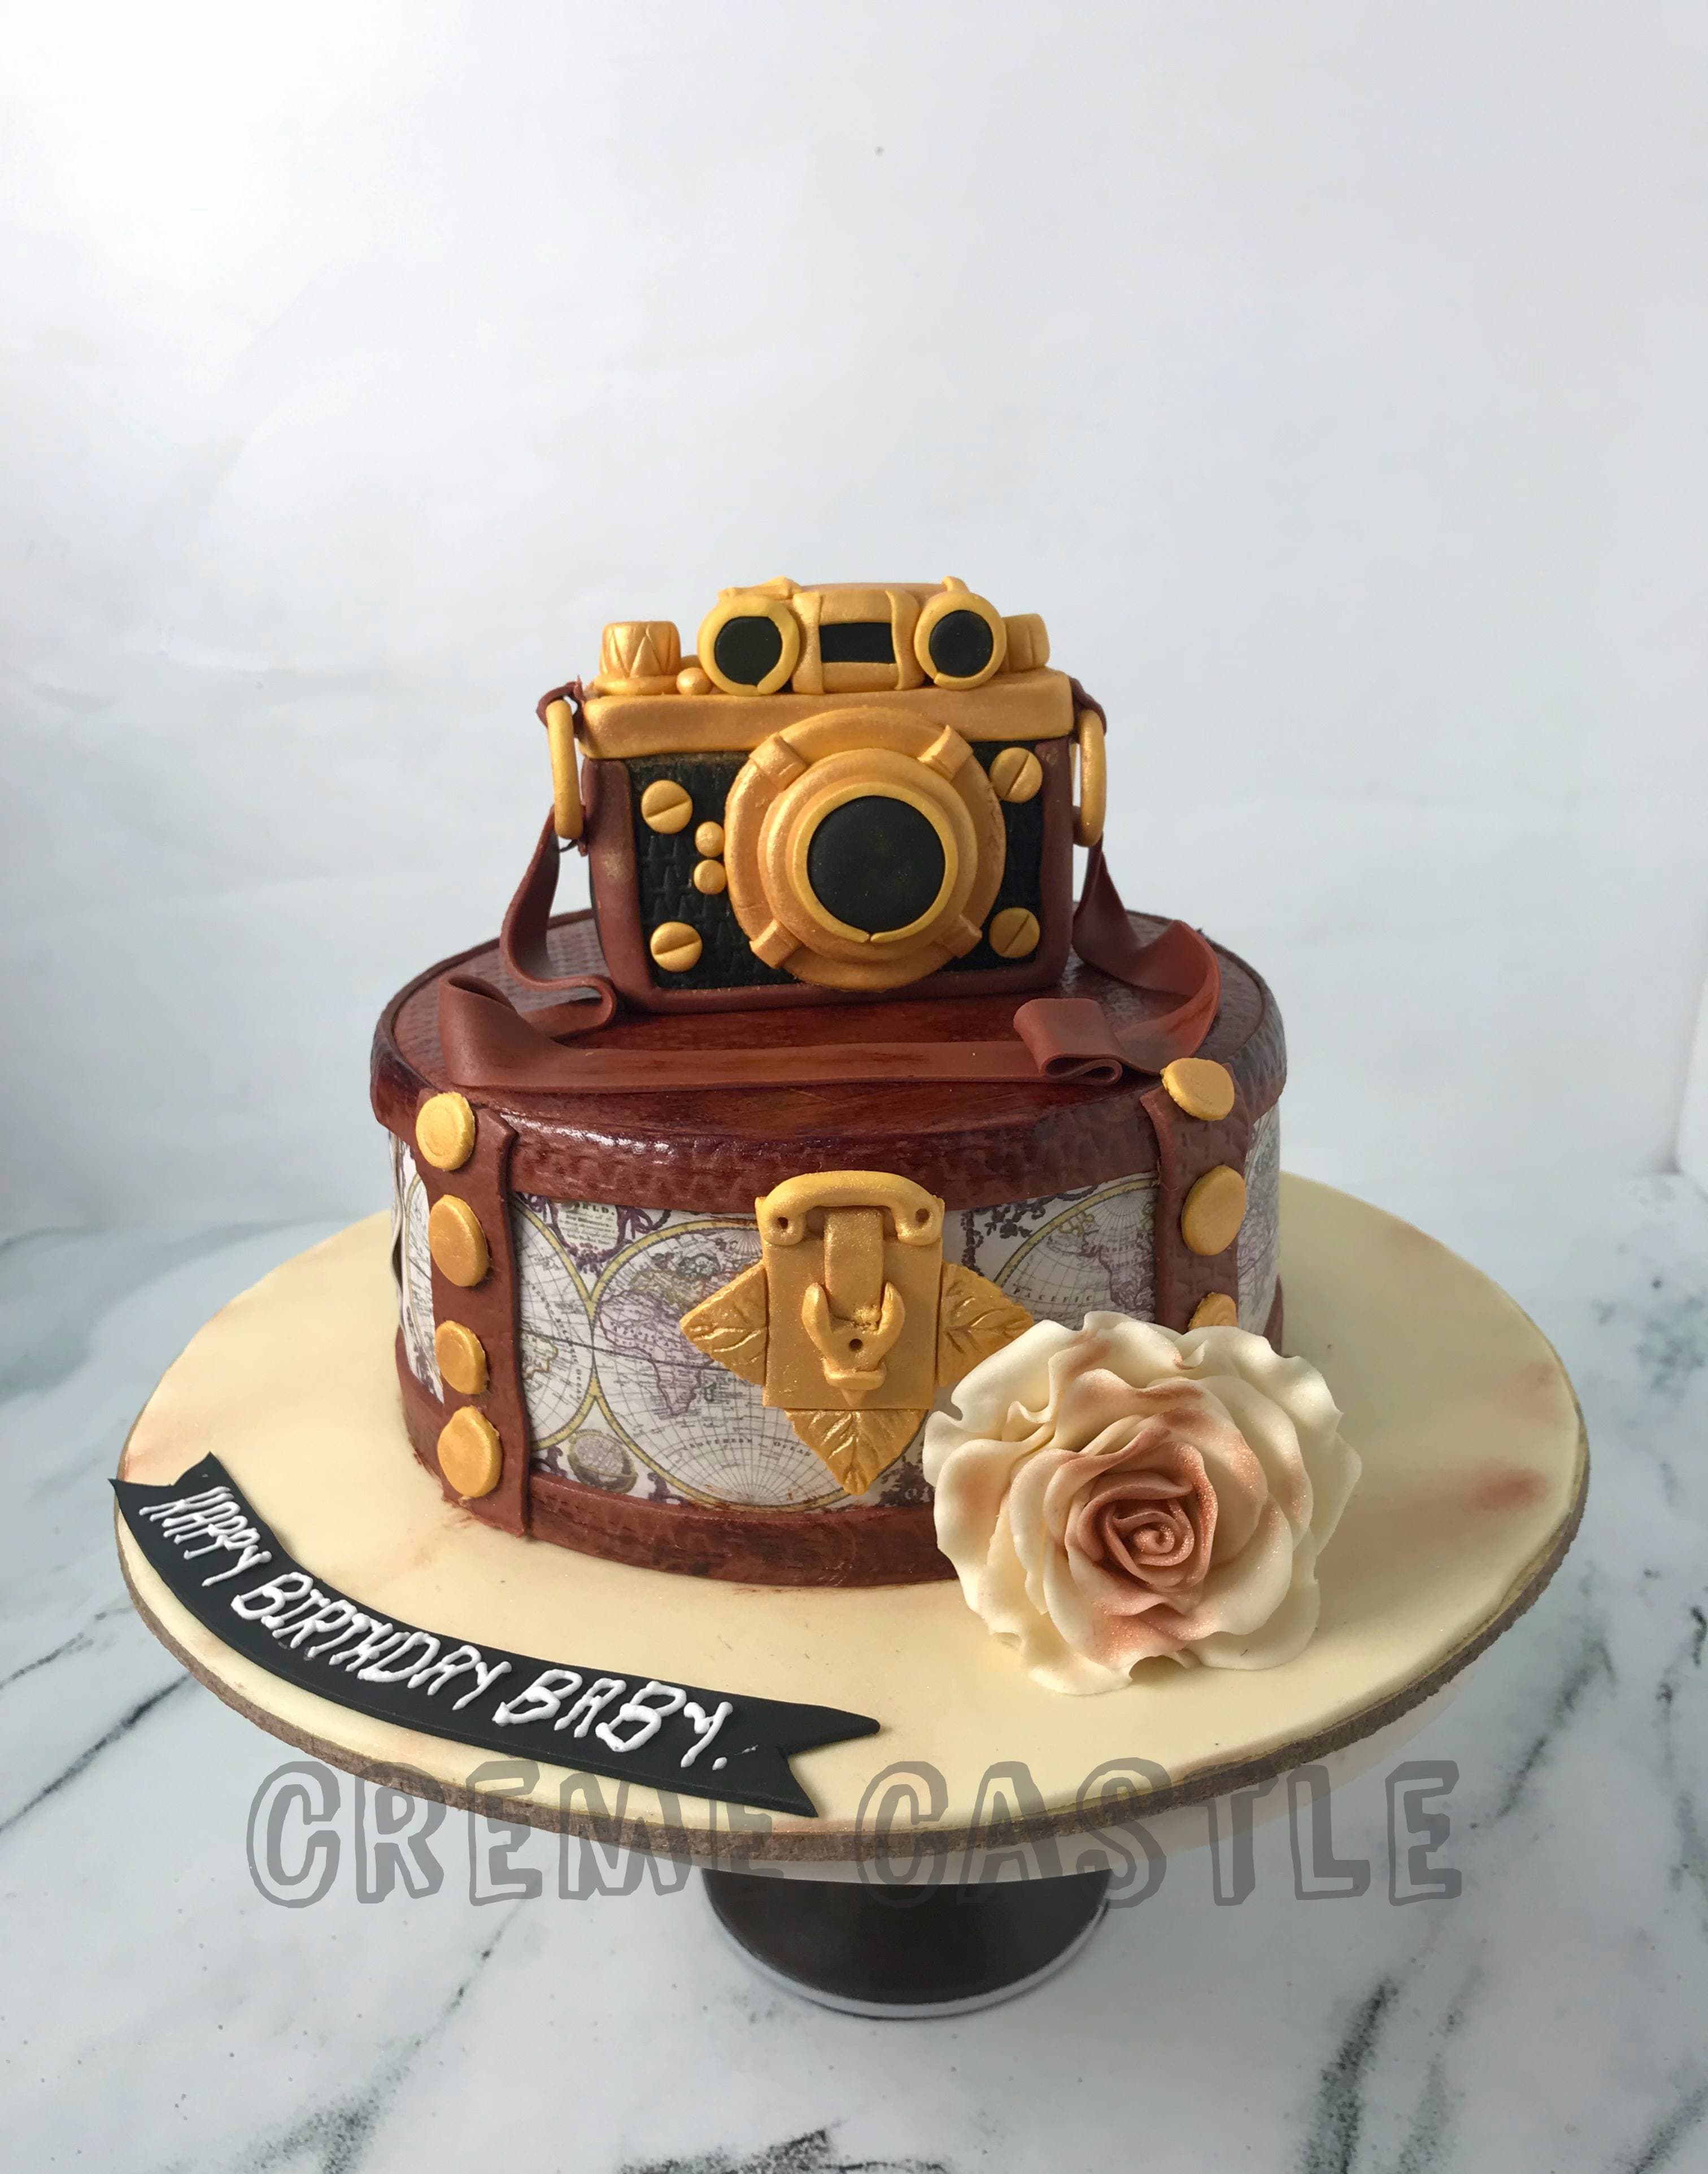 Camera Theme Cake|Customized Cakes Online Hyderabad|CakeSmash.in